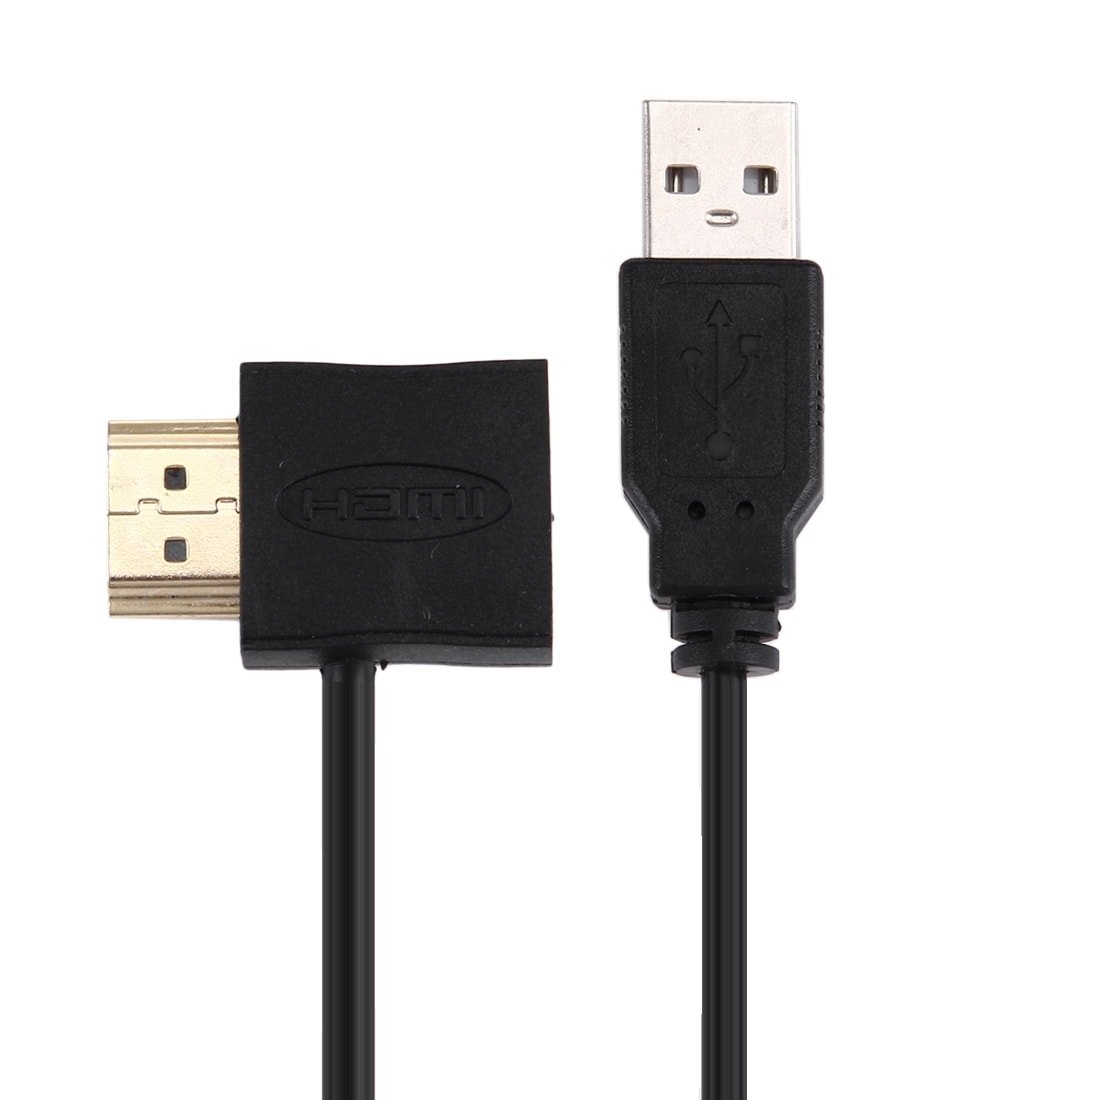 Adapteri HDMI naaras + HDMI uros USB 2.0 Uros